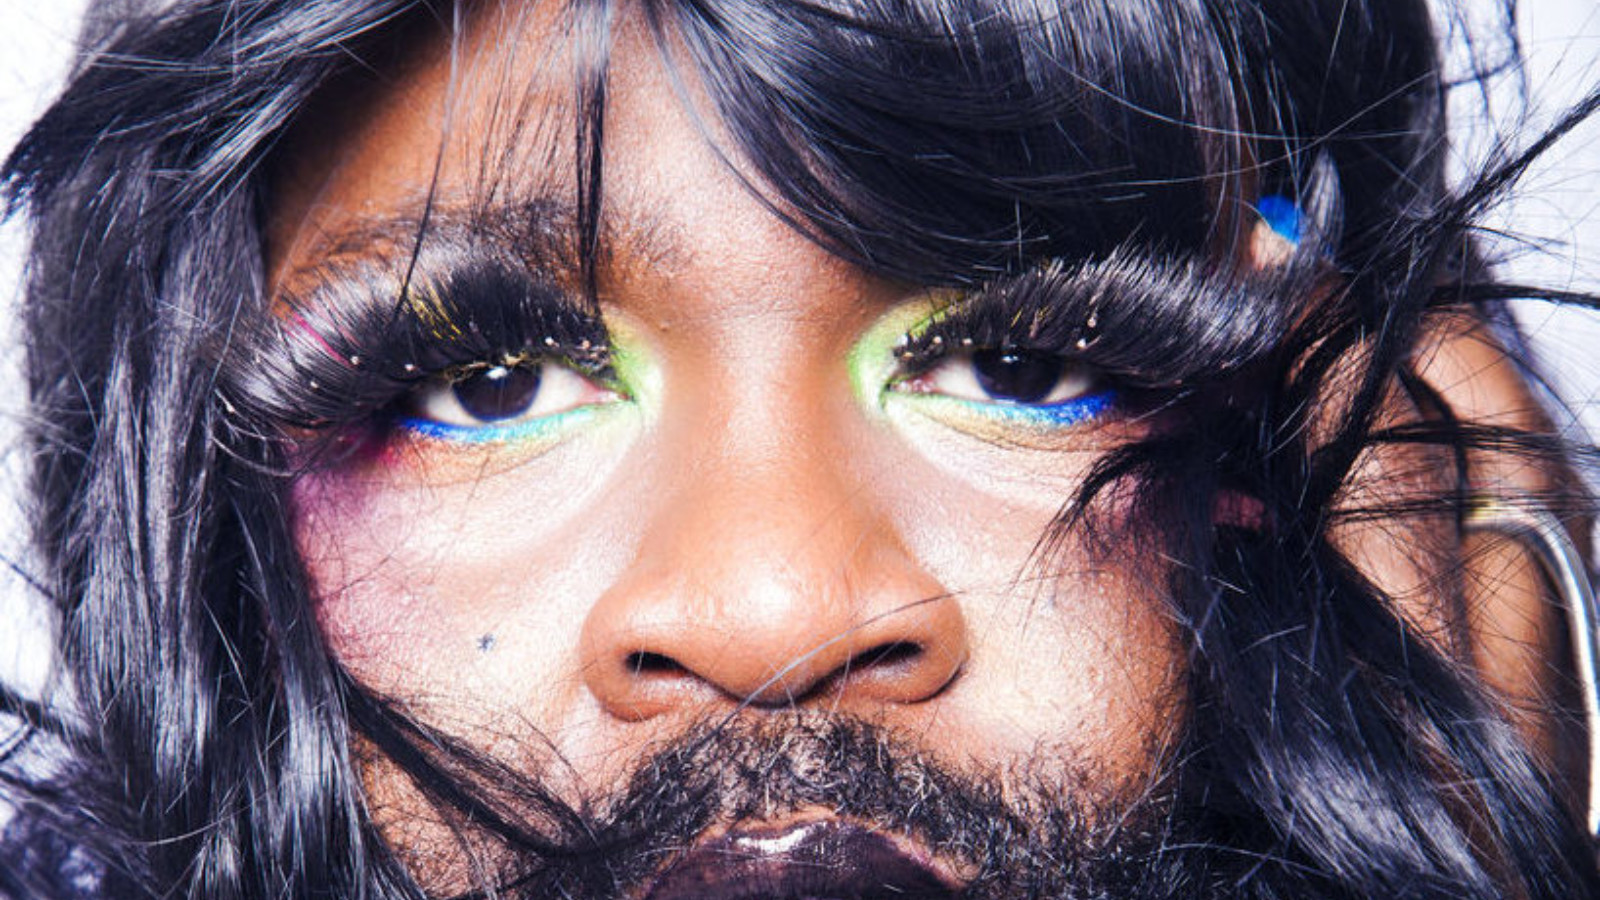 Close up portrait of artist Le Gateau Chocolat with long false eyelashes and colourful eyeshadow.